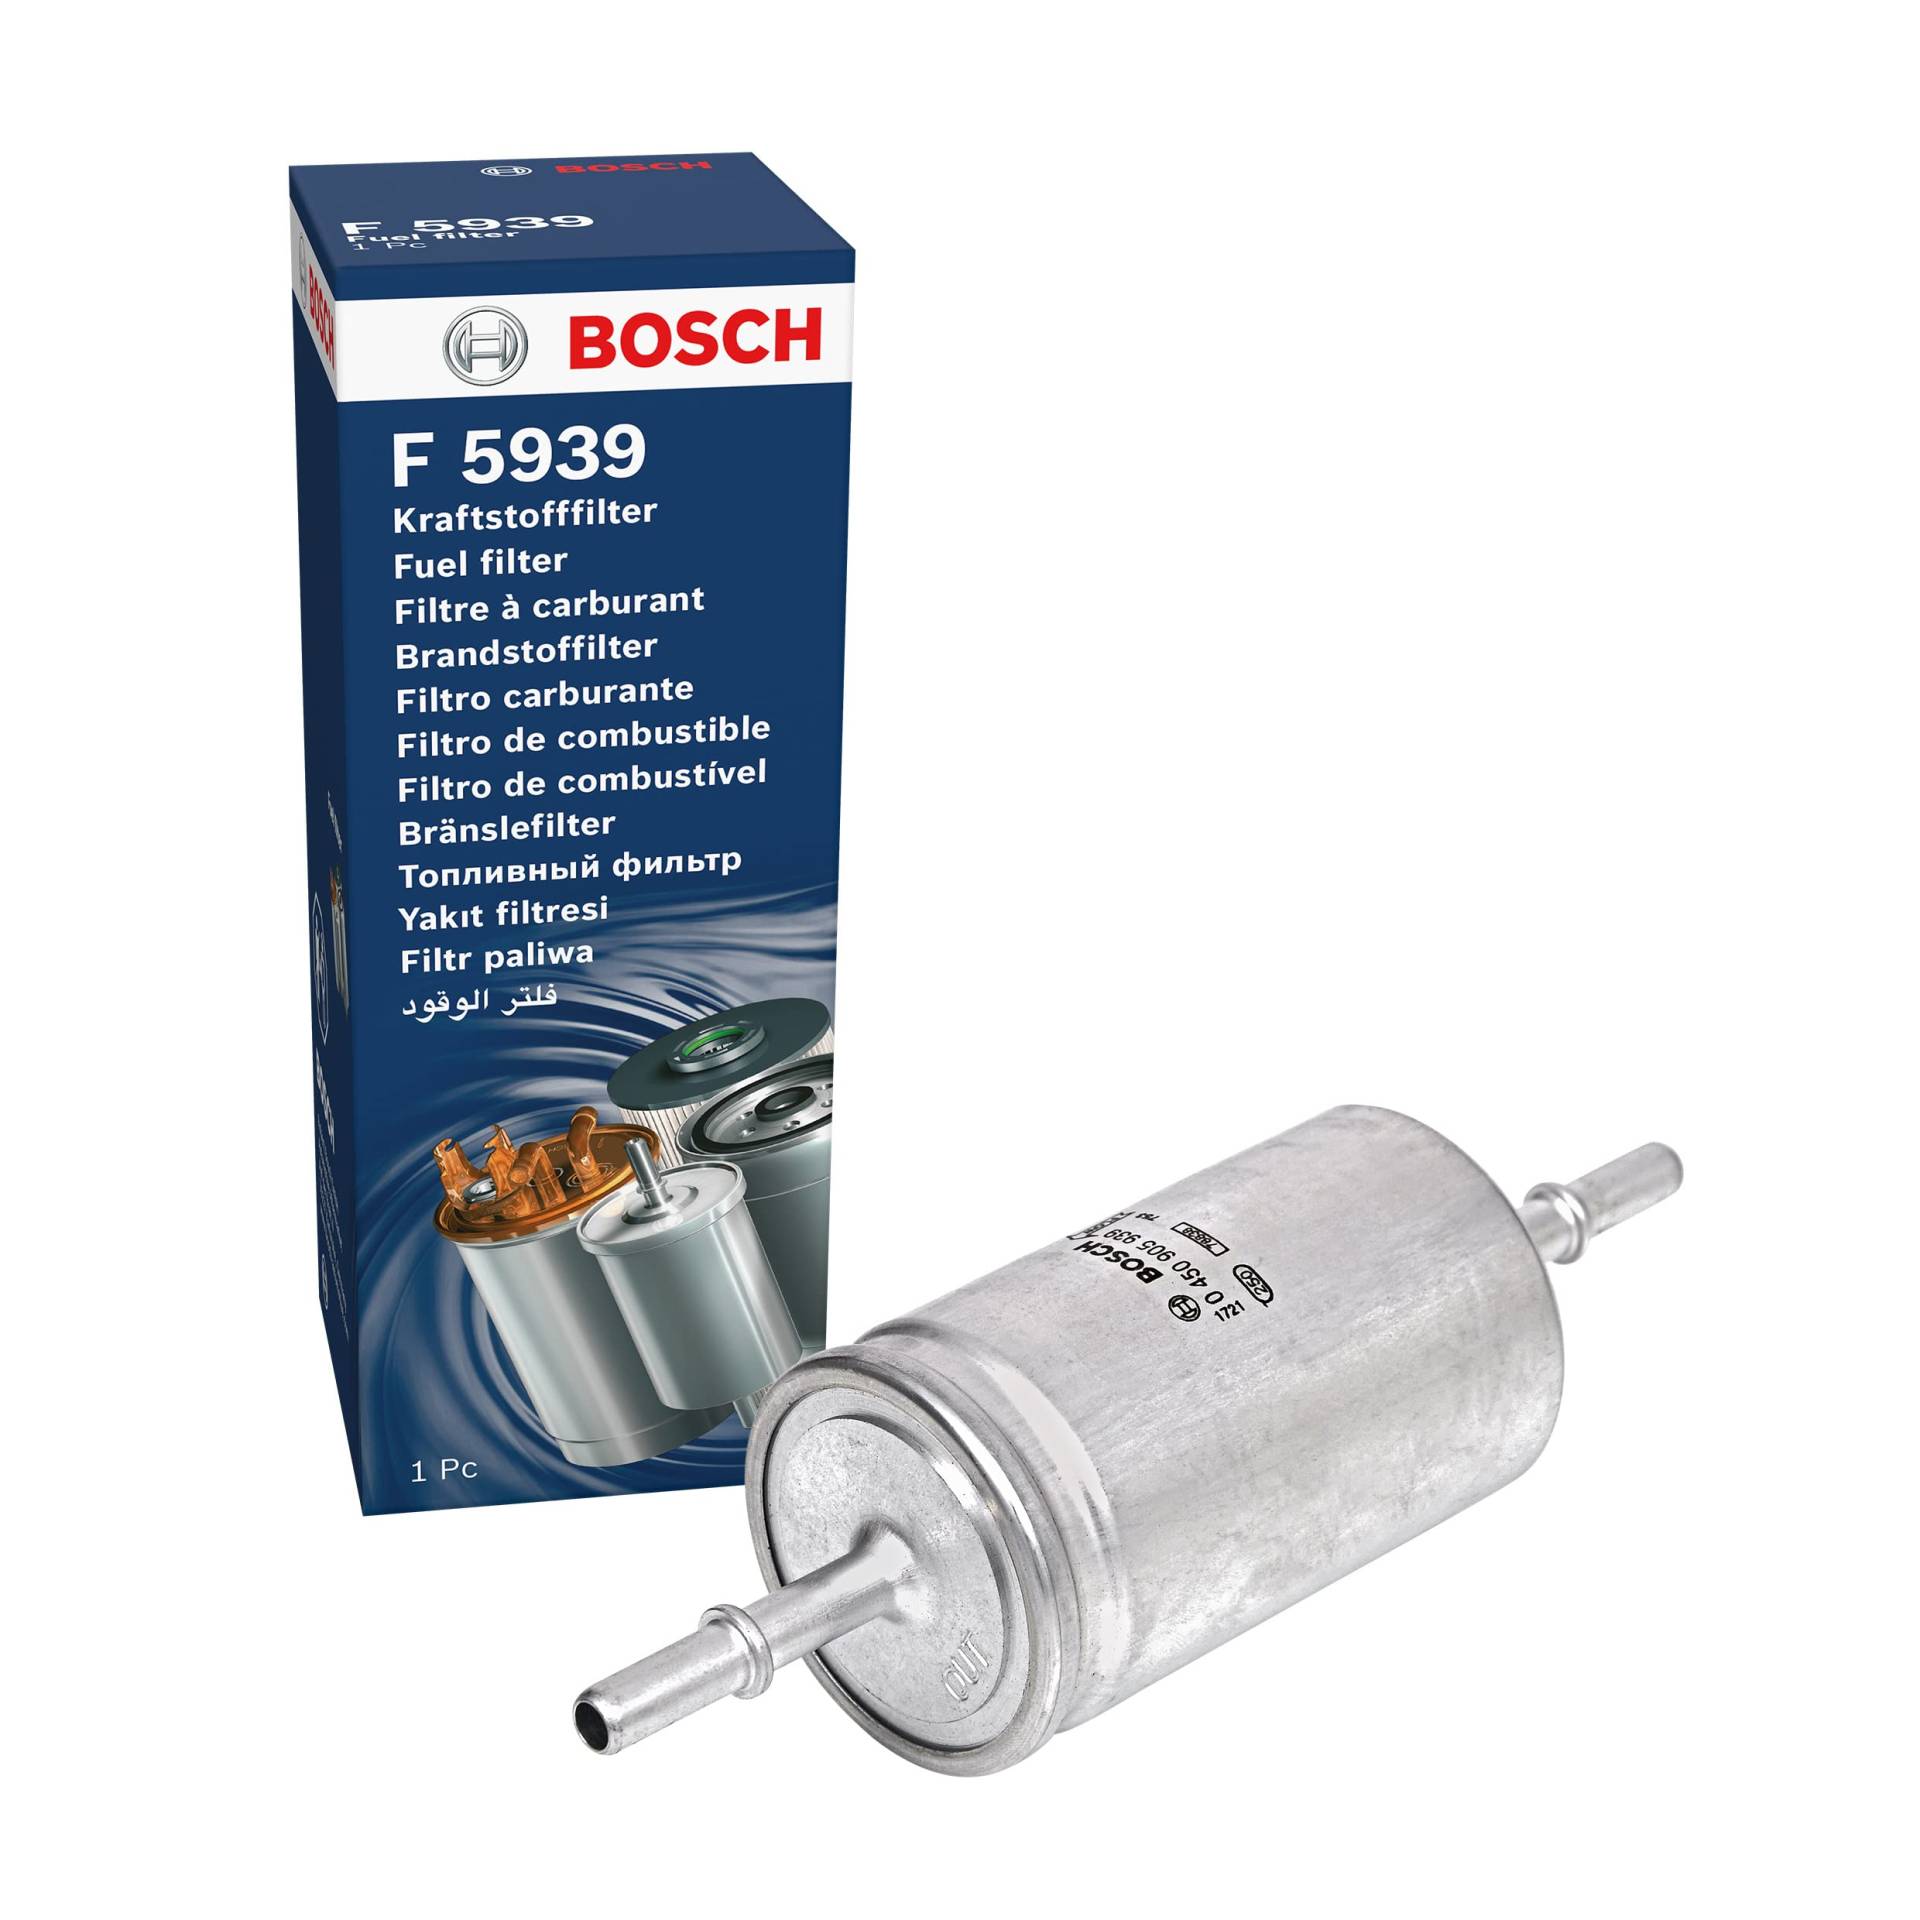 Bosch F5939 - Benzinfilter Auto von Bosch Automotive